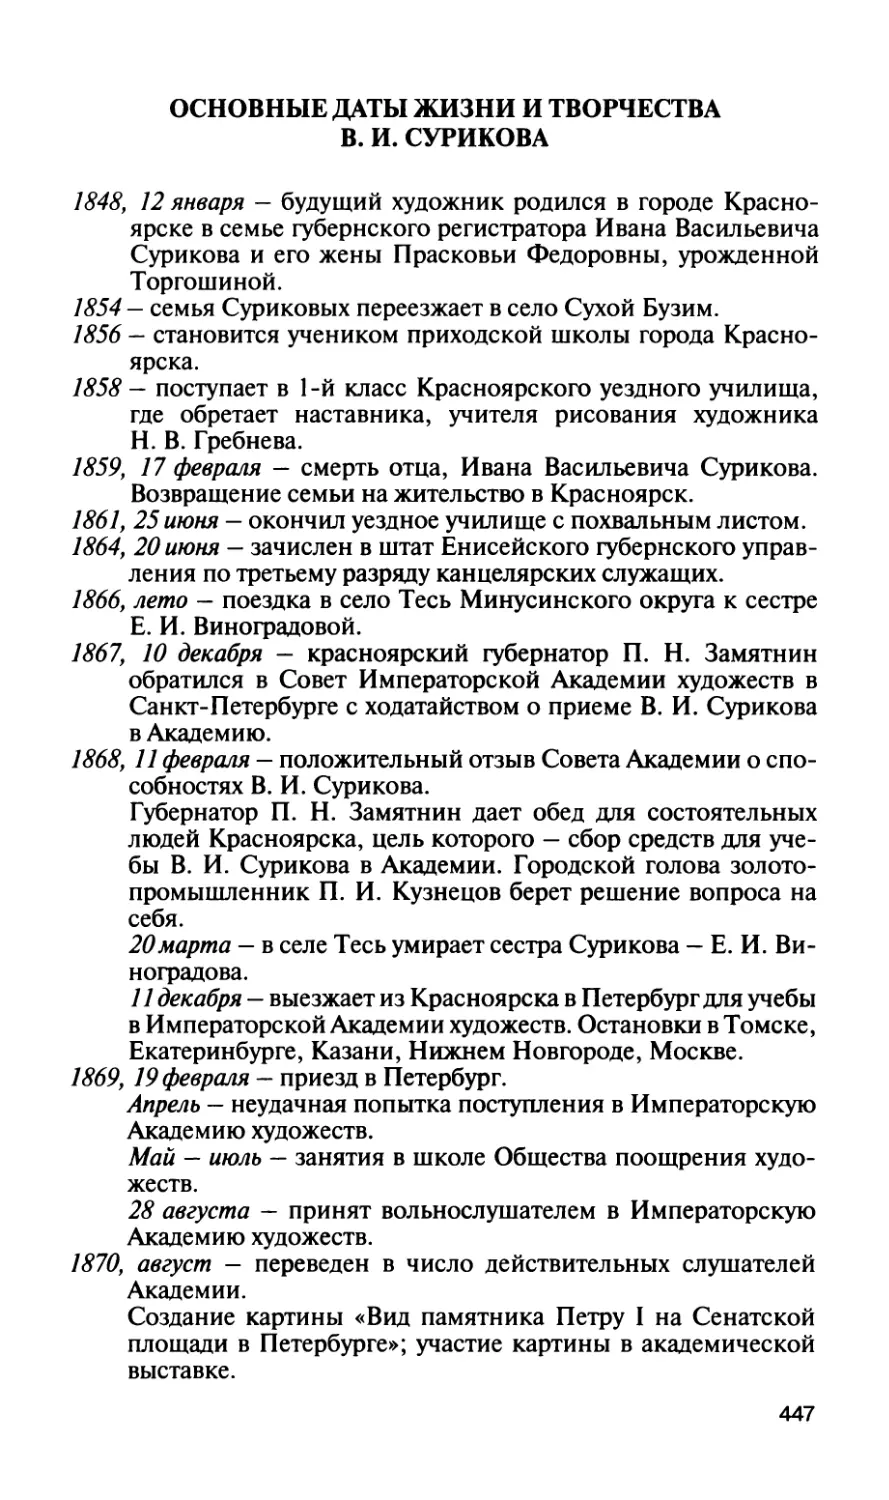 Основные даты жизни и творчества В. И. Сурикова